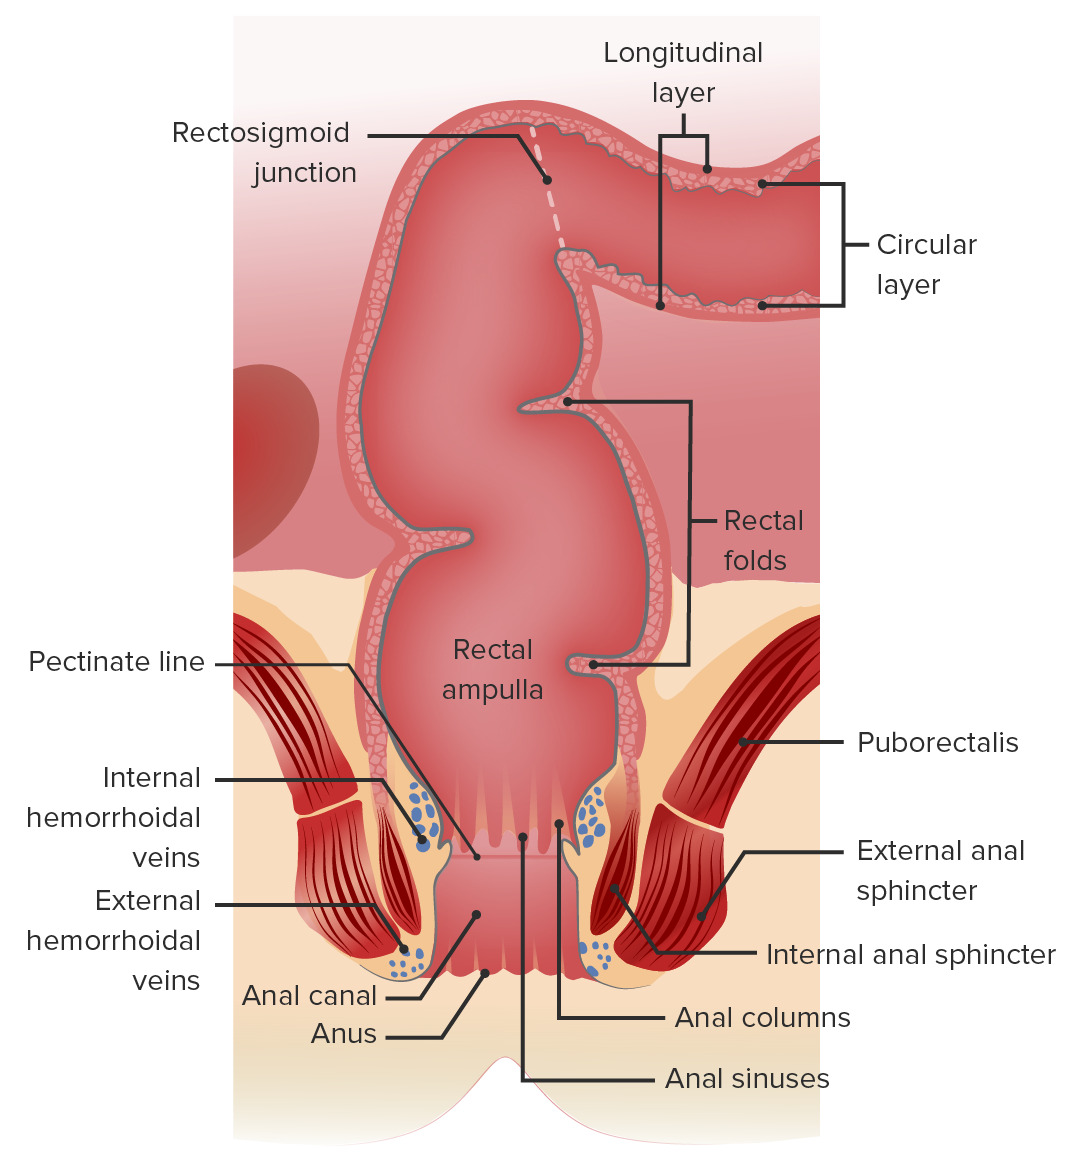 Anatomía macroscópica del recto y el canal anal